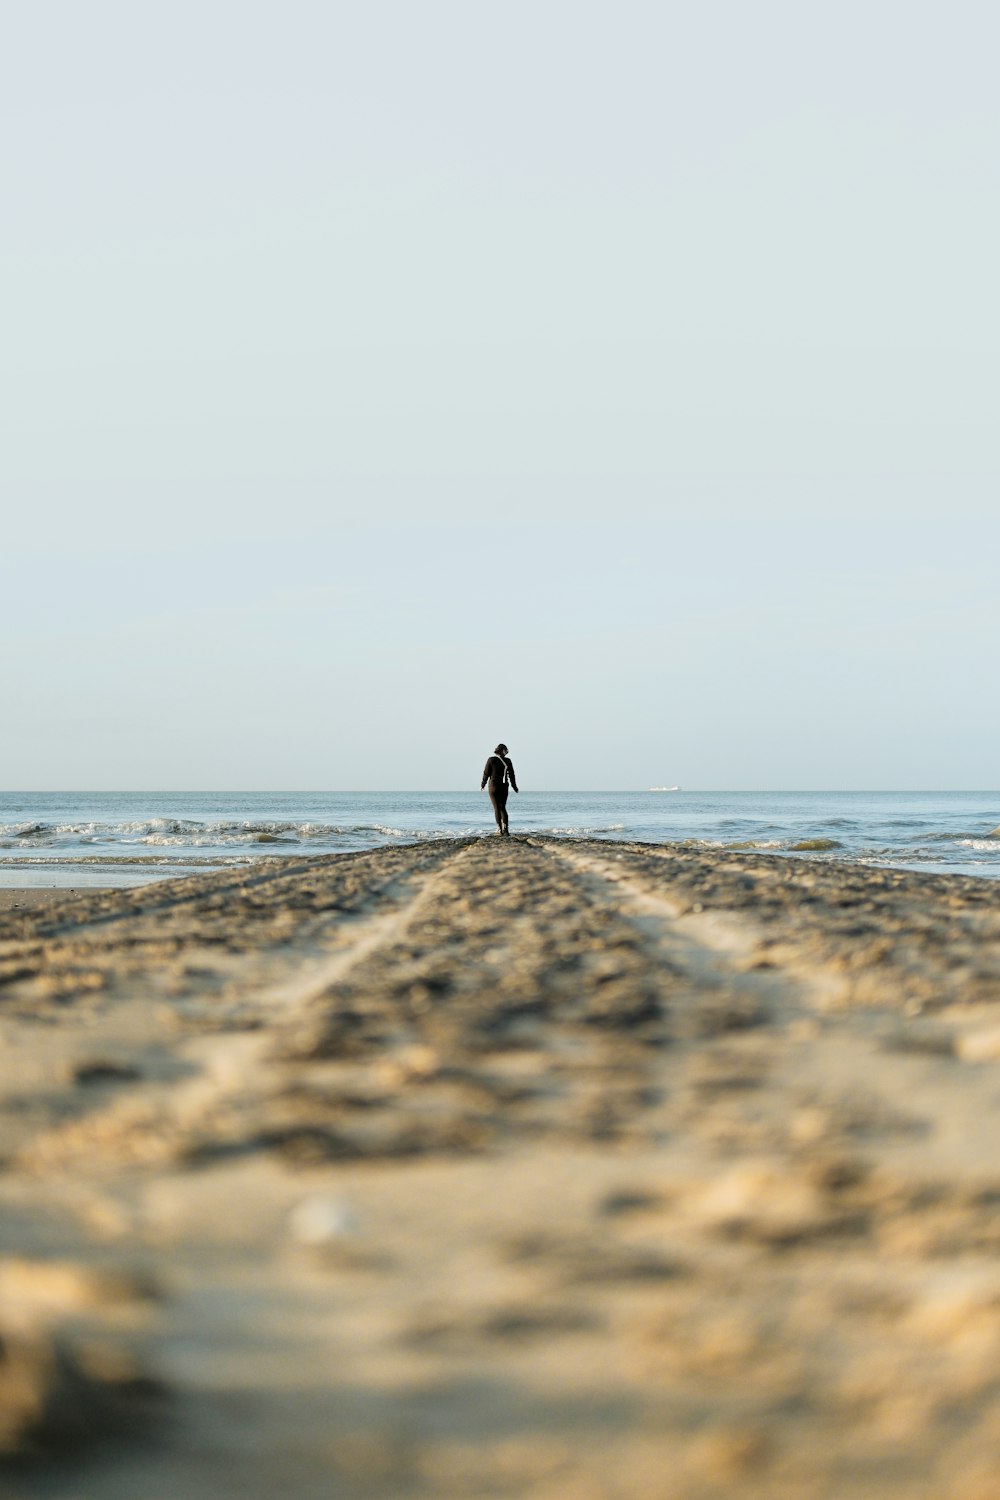 a lone person walking on a beach near the ocean